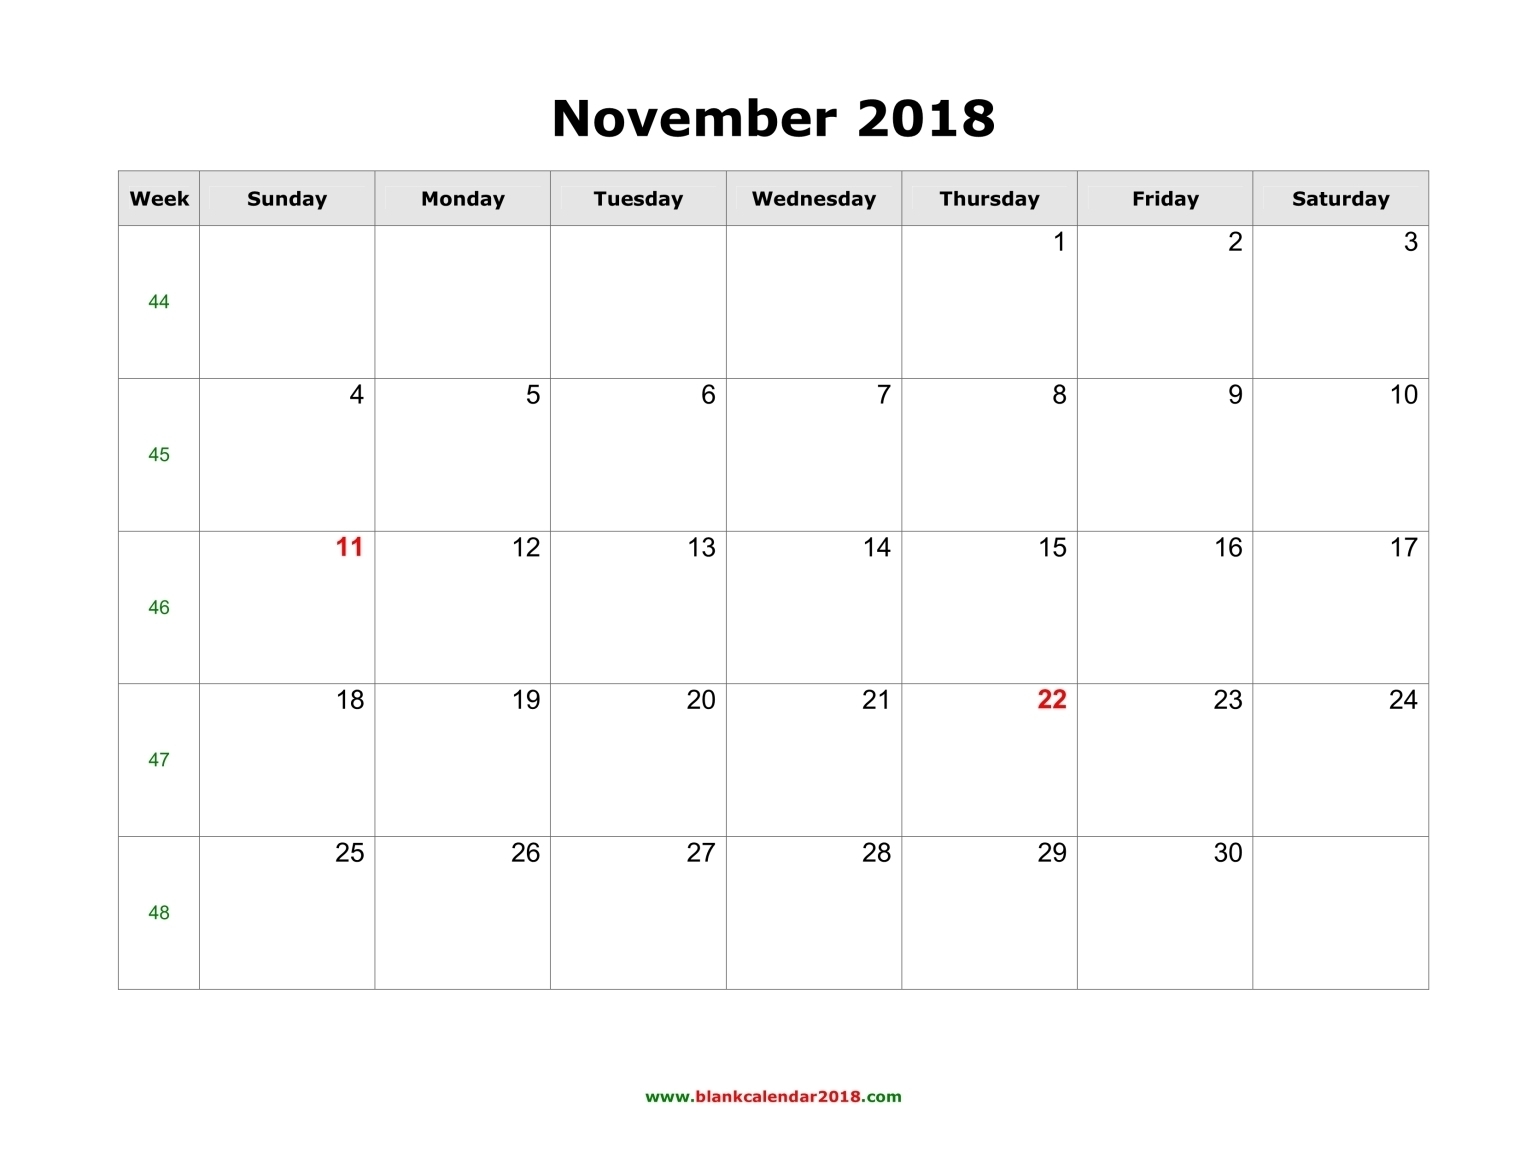 November 2018 Calendar Landscape